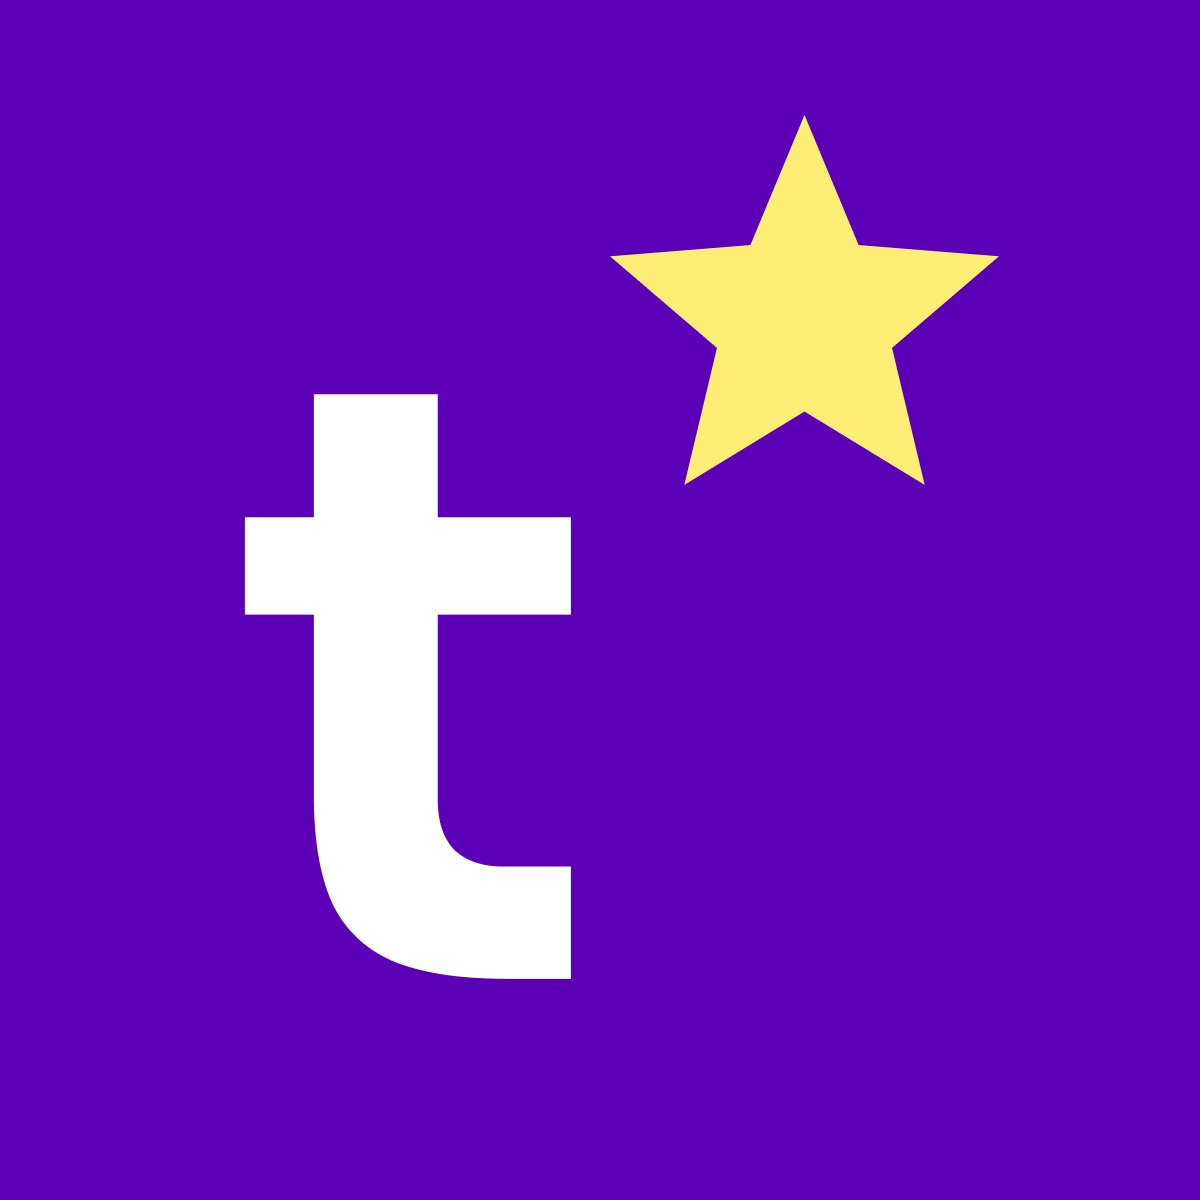 Trustiply ‑ Trustpilot Reviews